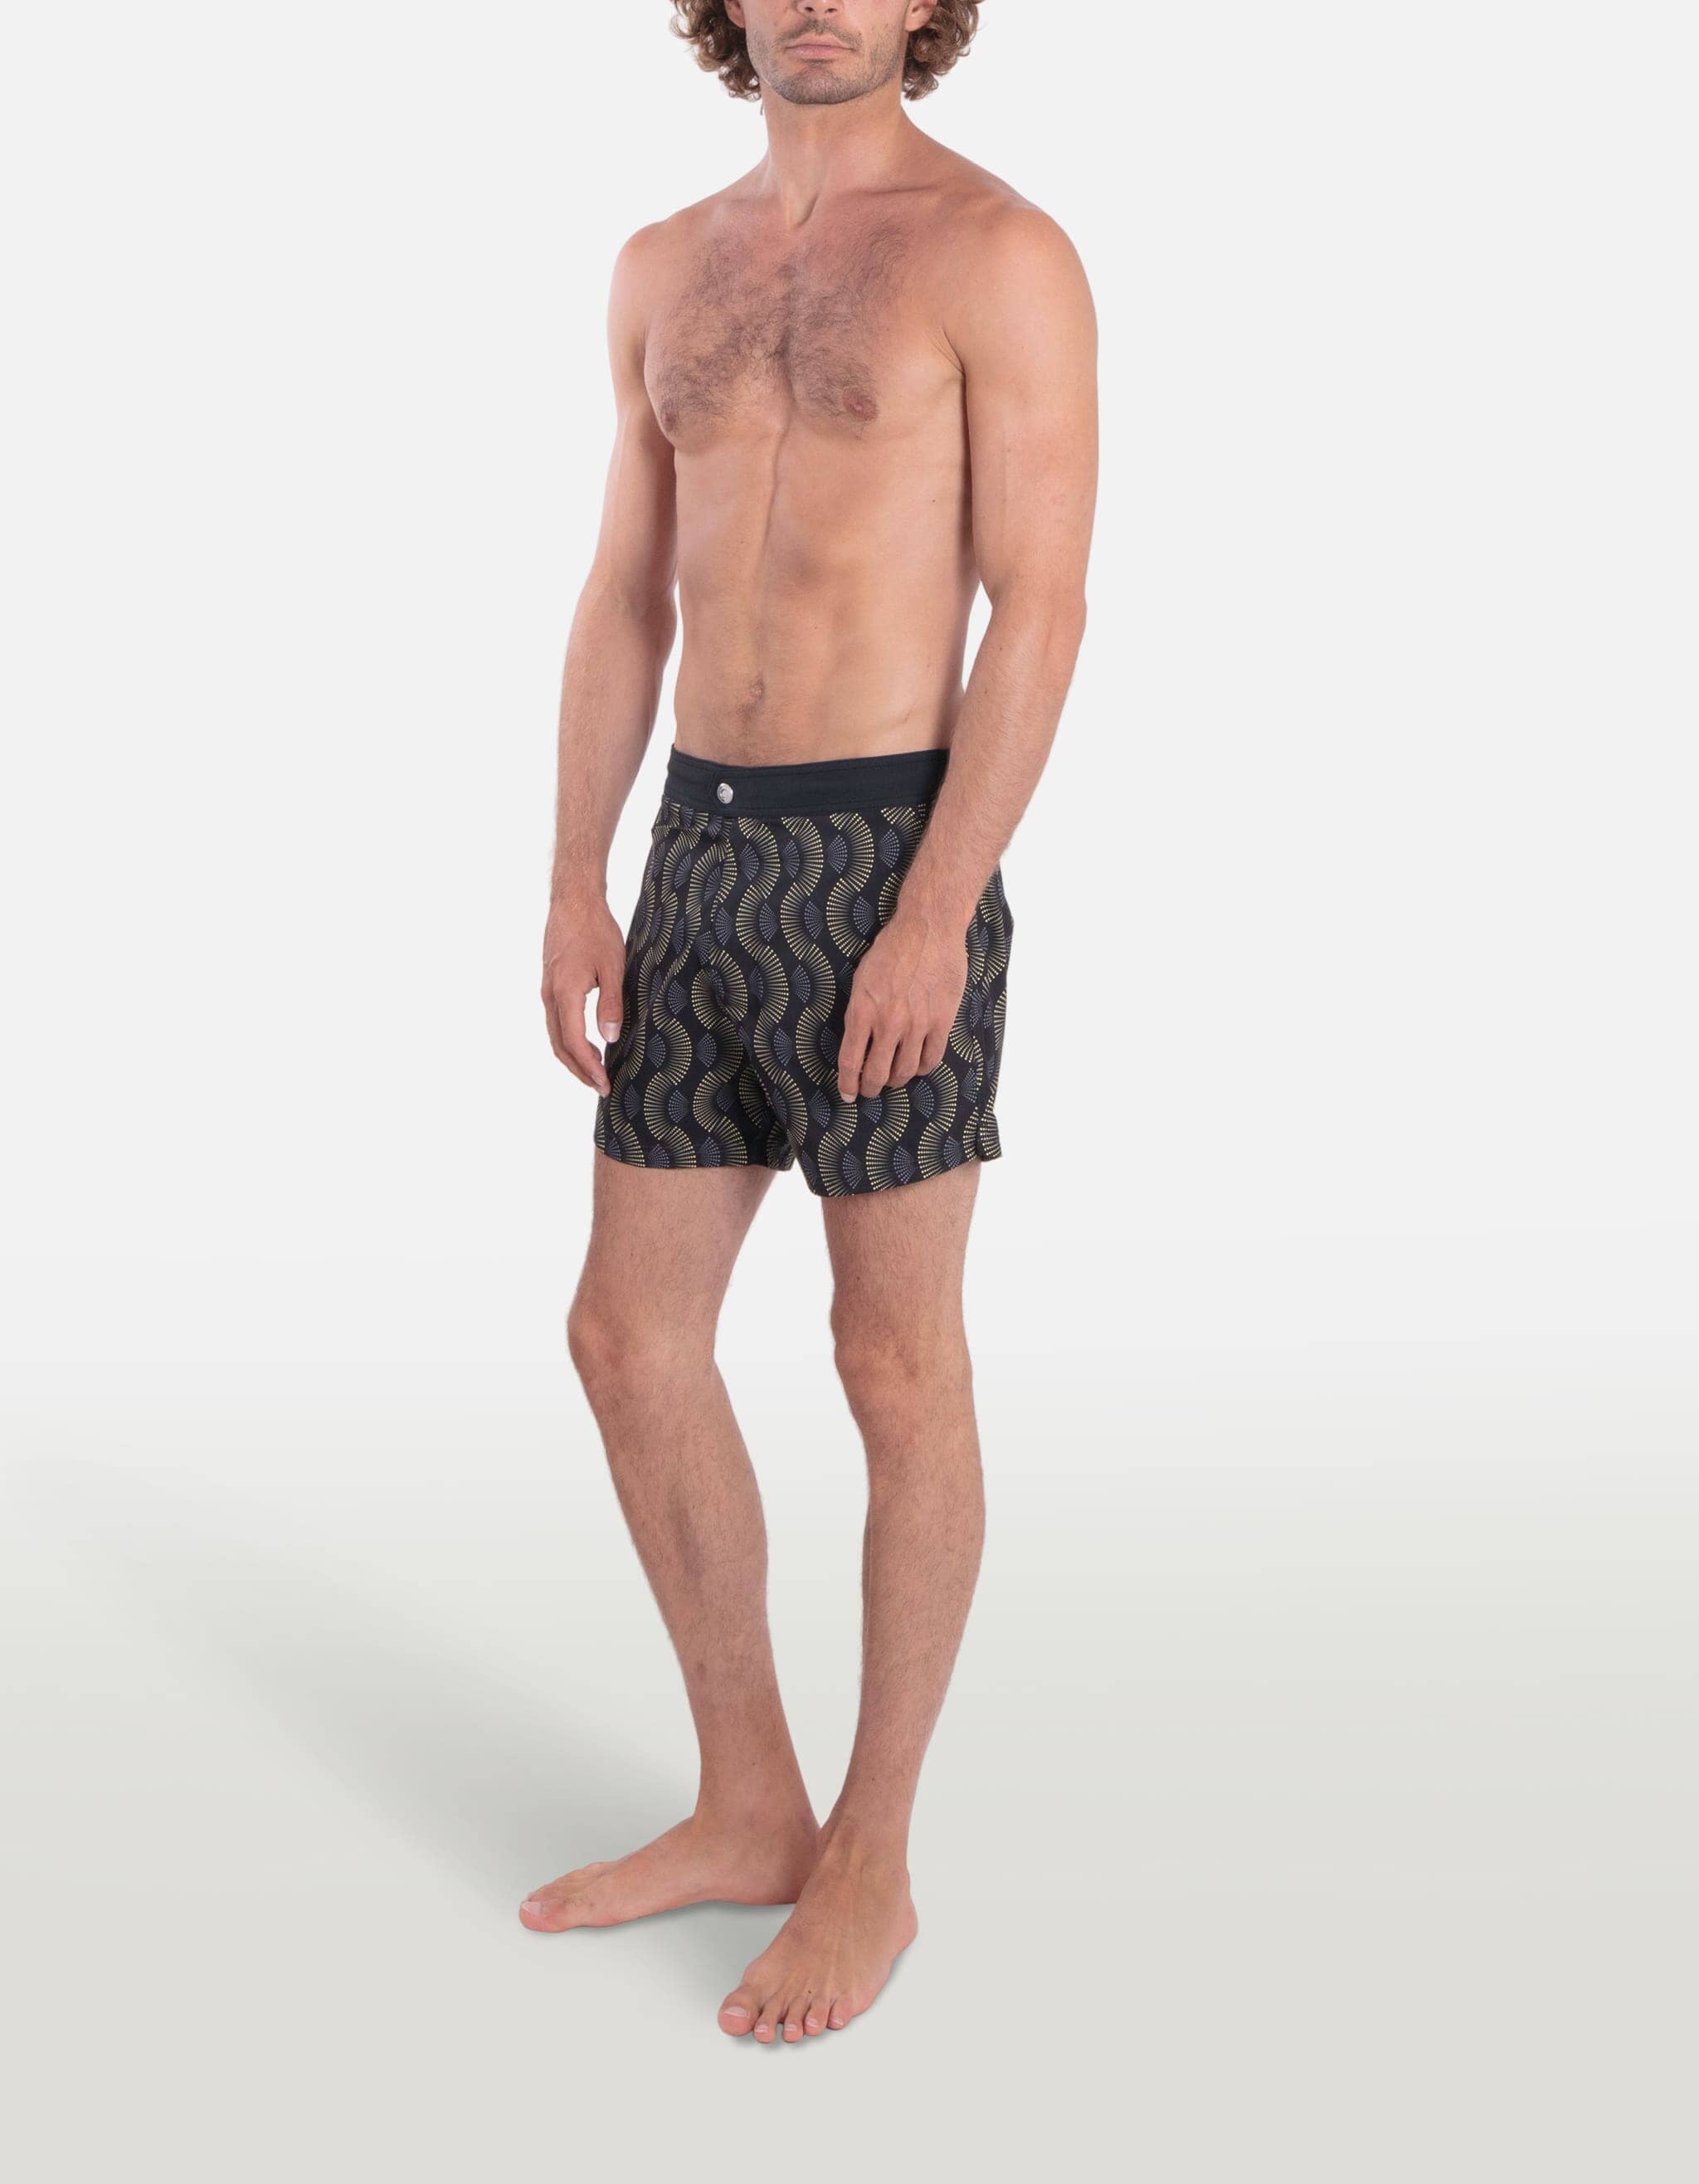 Ben - P18. Vegas Swim Shorts - Ben MACKEENE 